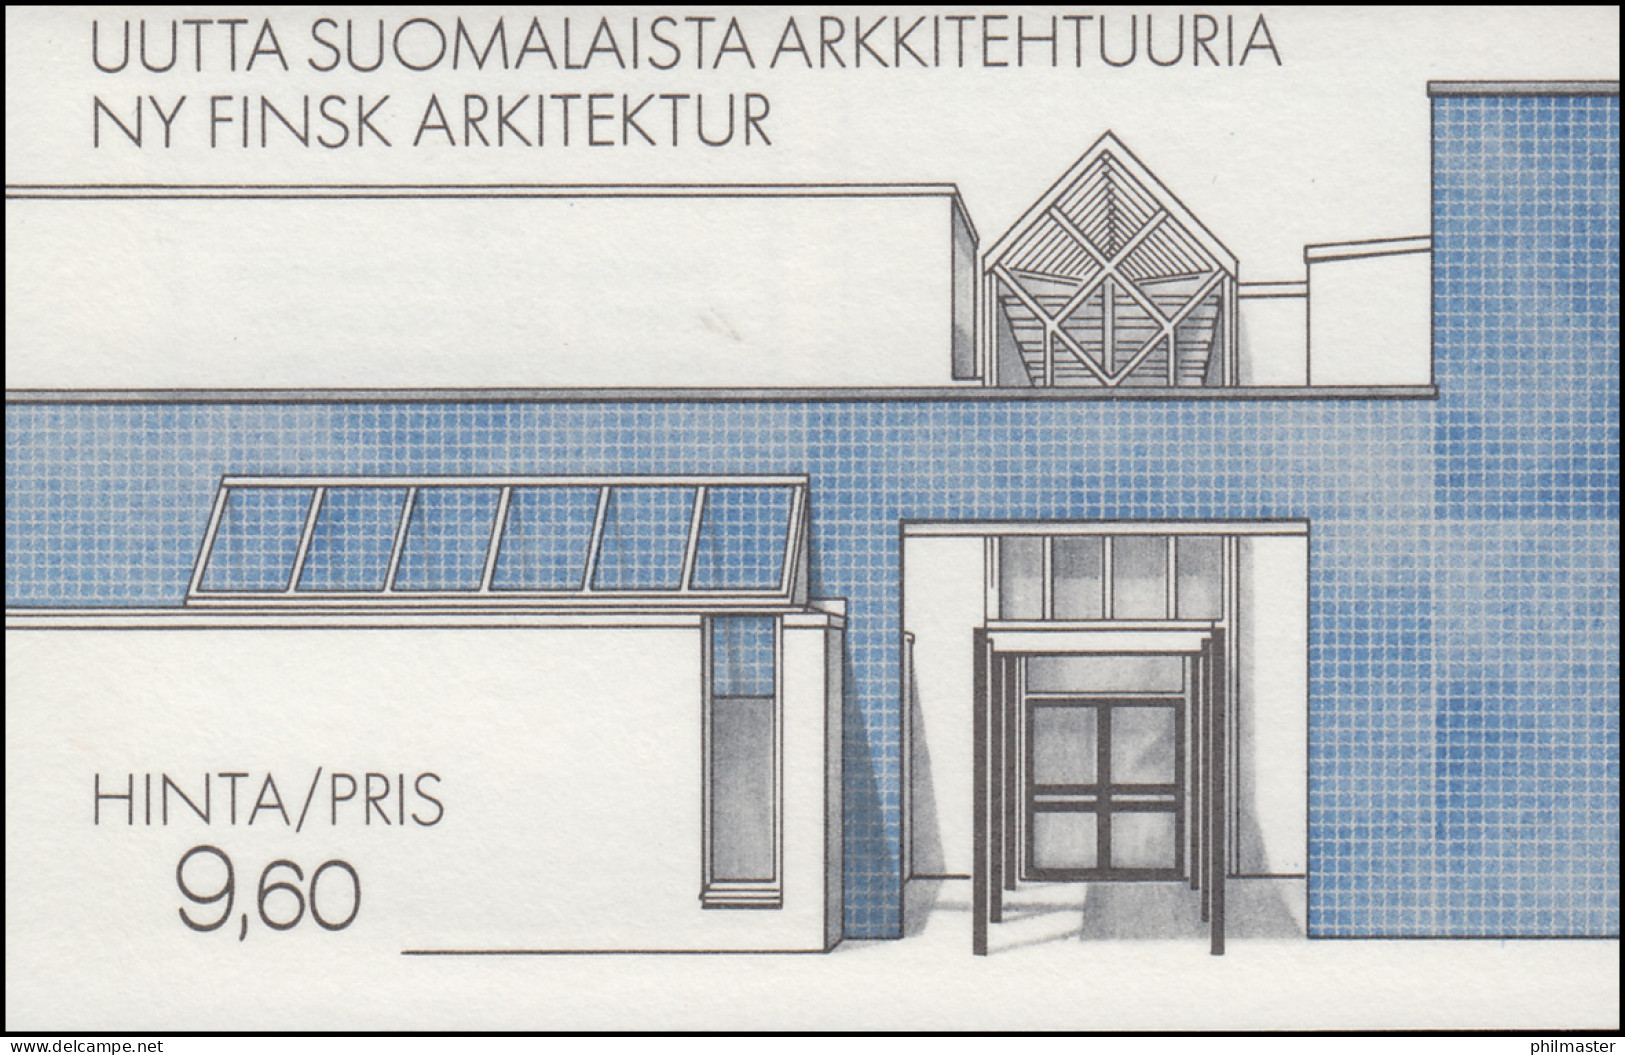 Finnland Markenheftchen 17 Architektur: Moderne Gebäude, ** Postfrisch - Cuadernillos